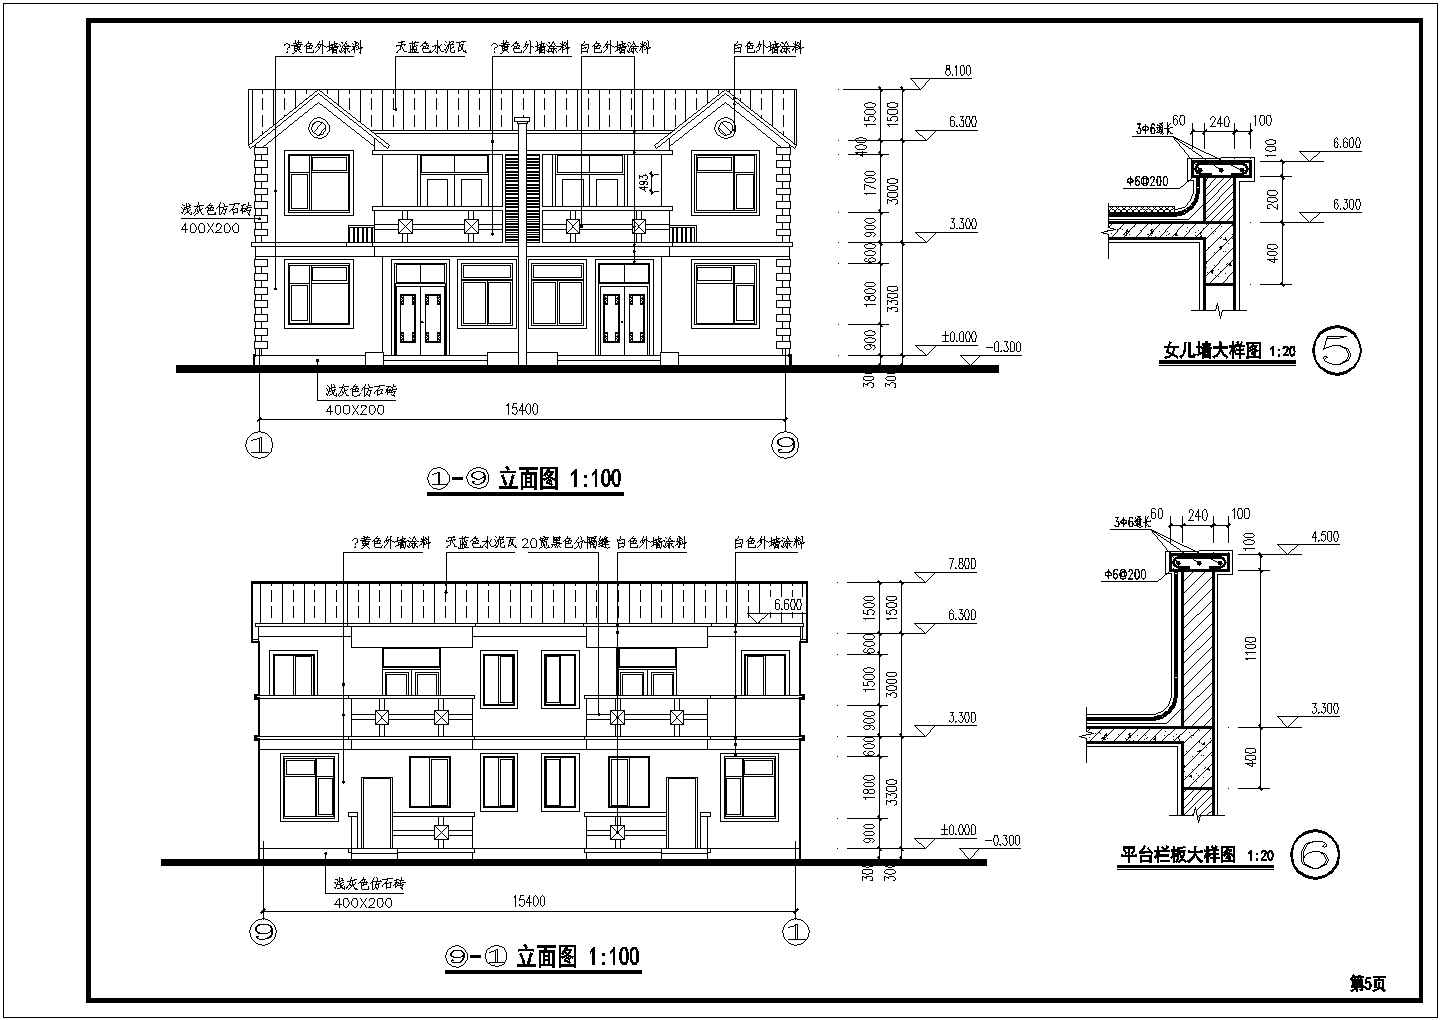 范岗镇某地两层砖混结构新农村住宅建筑设计方案图